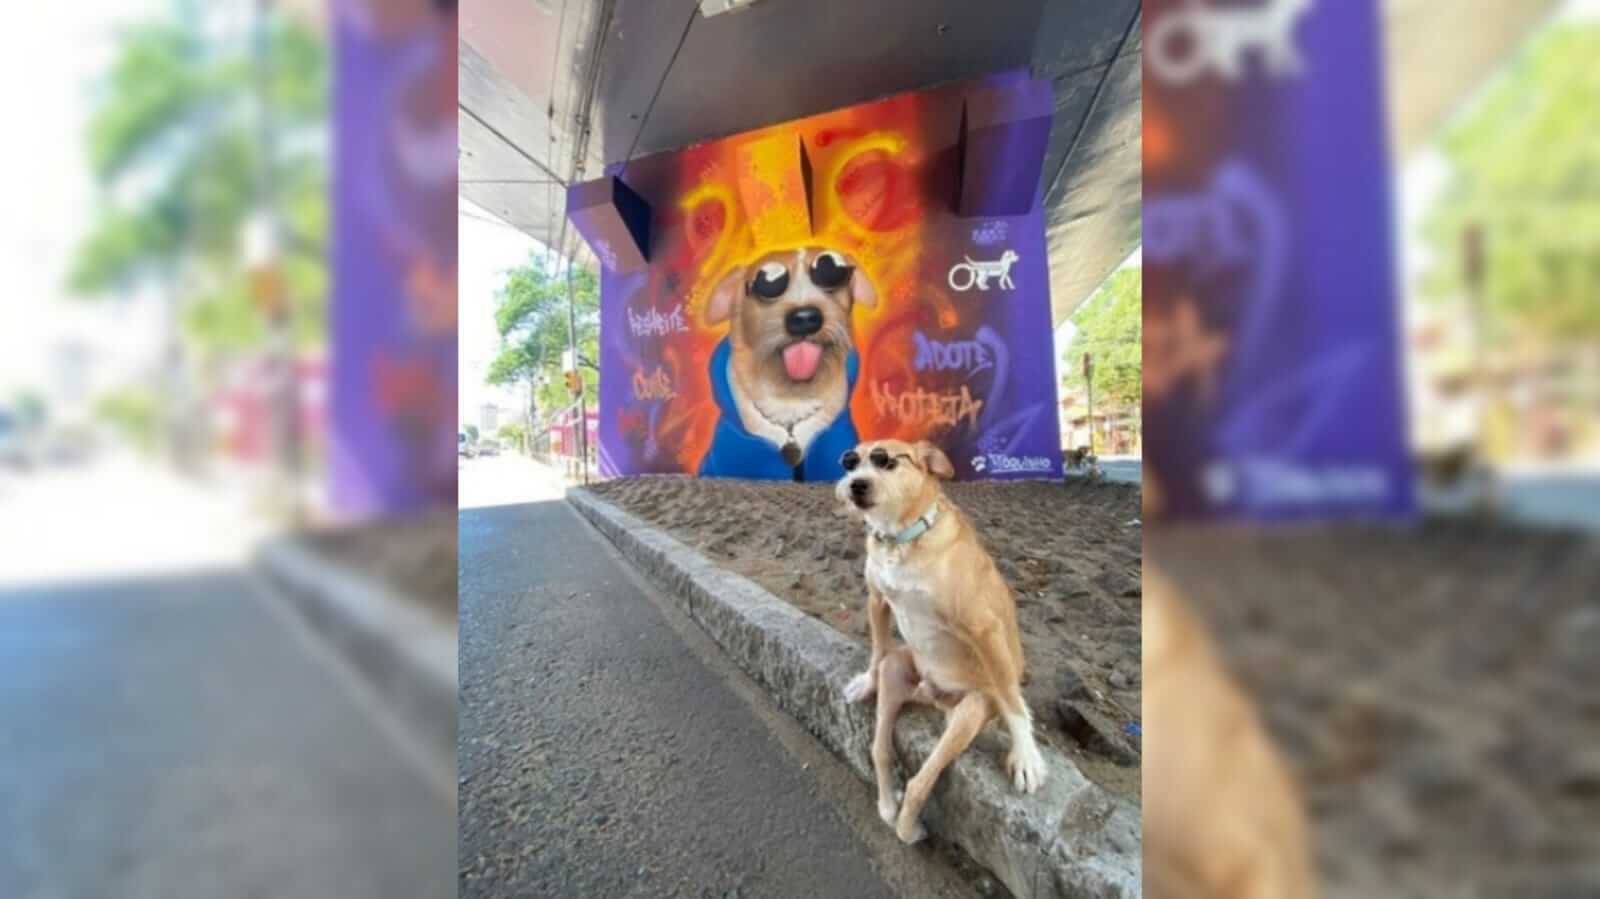 cachorro paraplégico ganha mural em viaduto